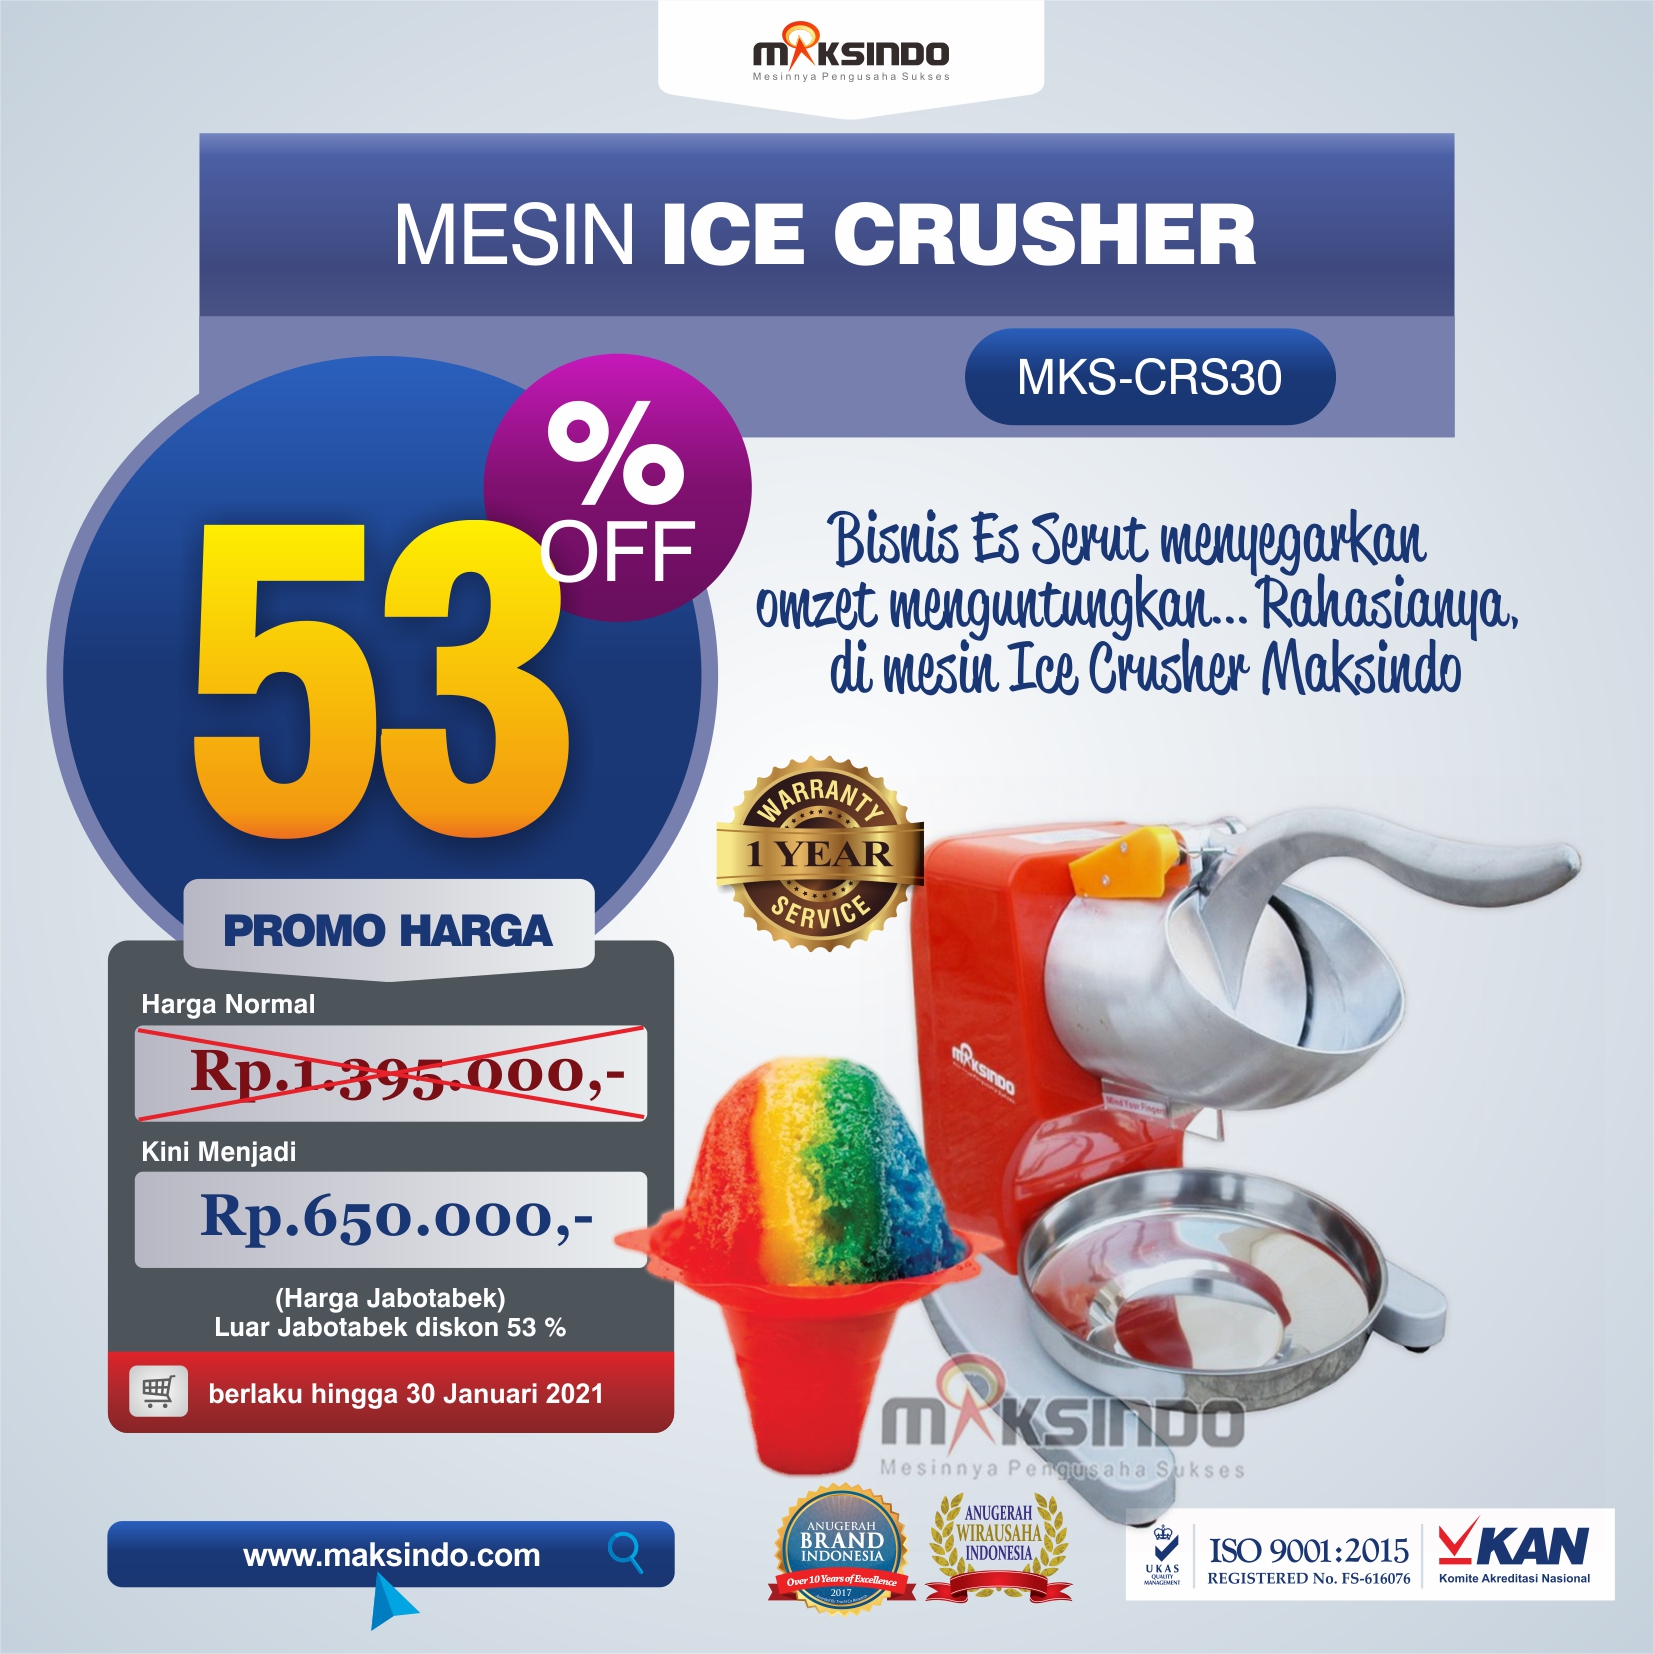 Jual Mesin Ice Crusher MKS-CRS30 di Tangerang